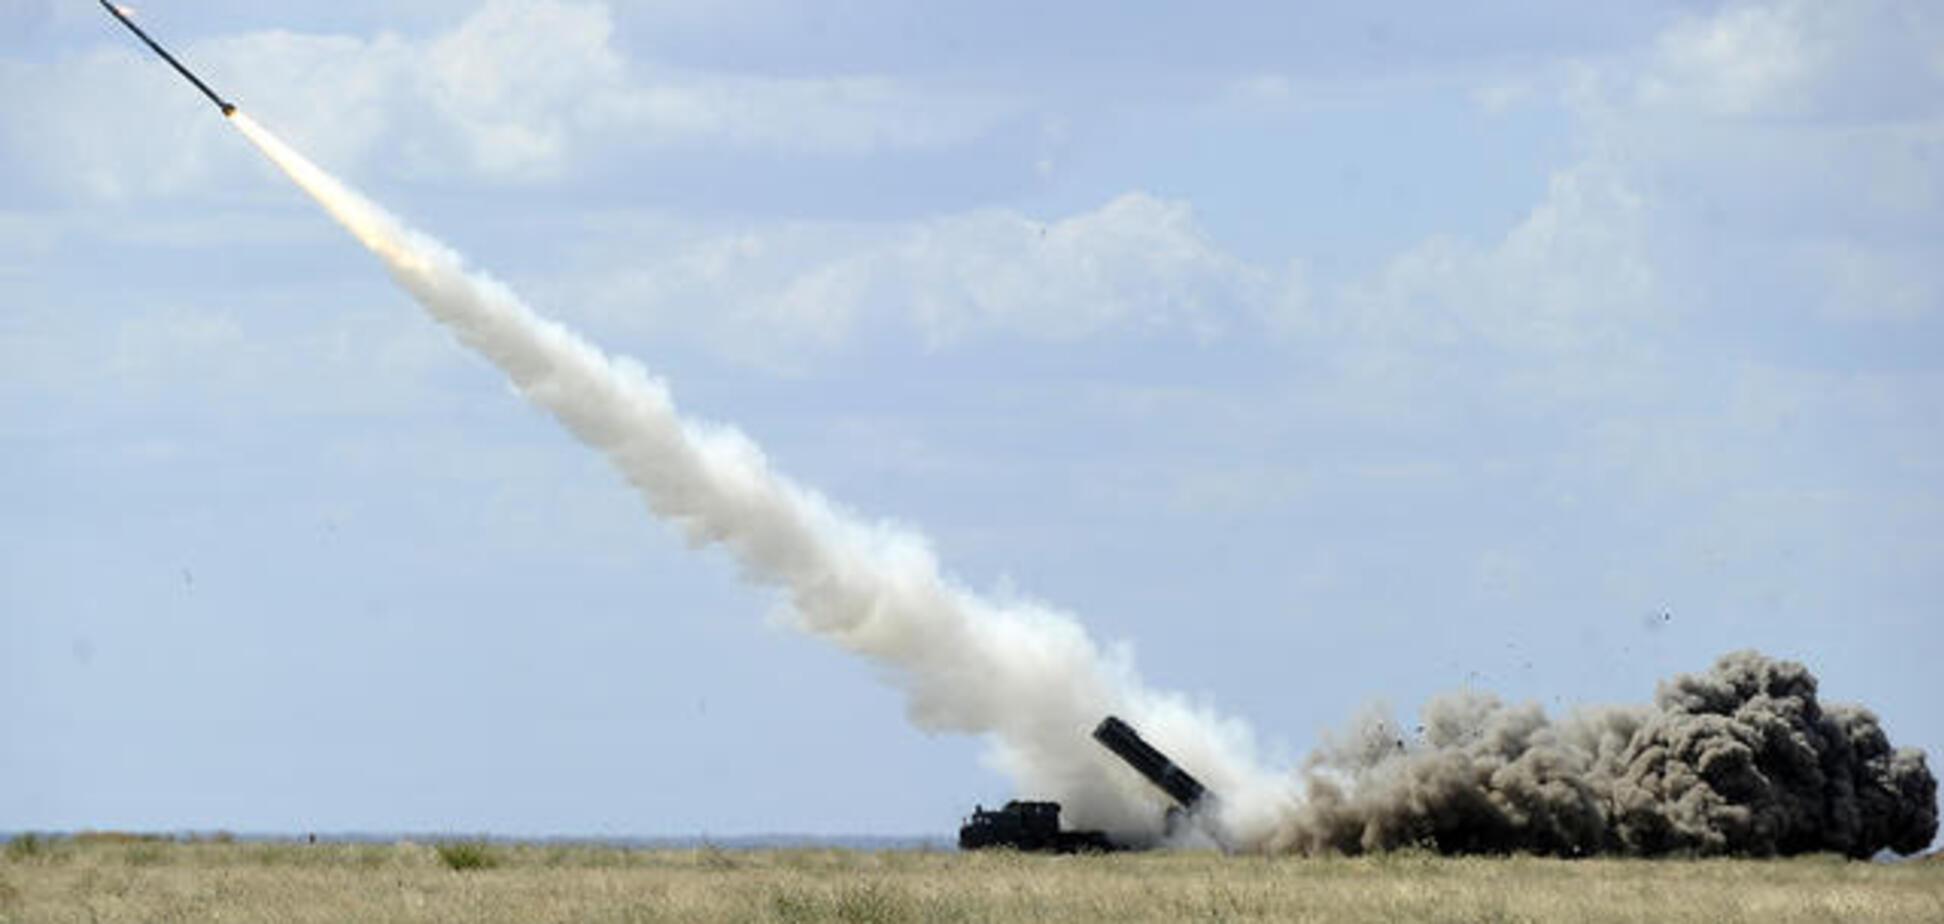 Нова українська ракета може бити на 450 кілометрів - спеціаліст зі зброї